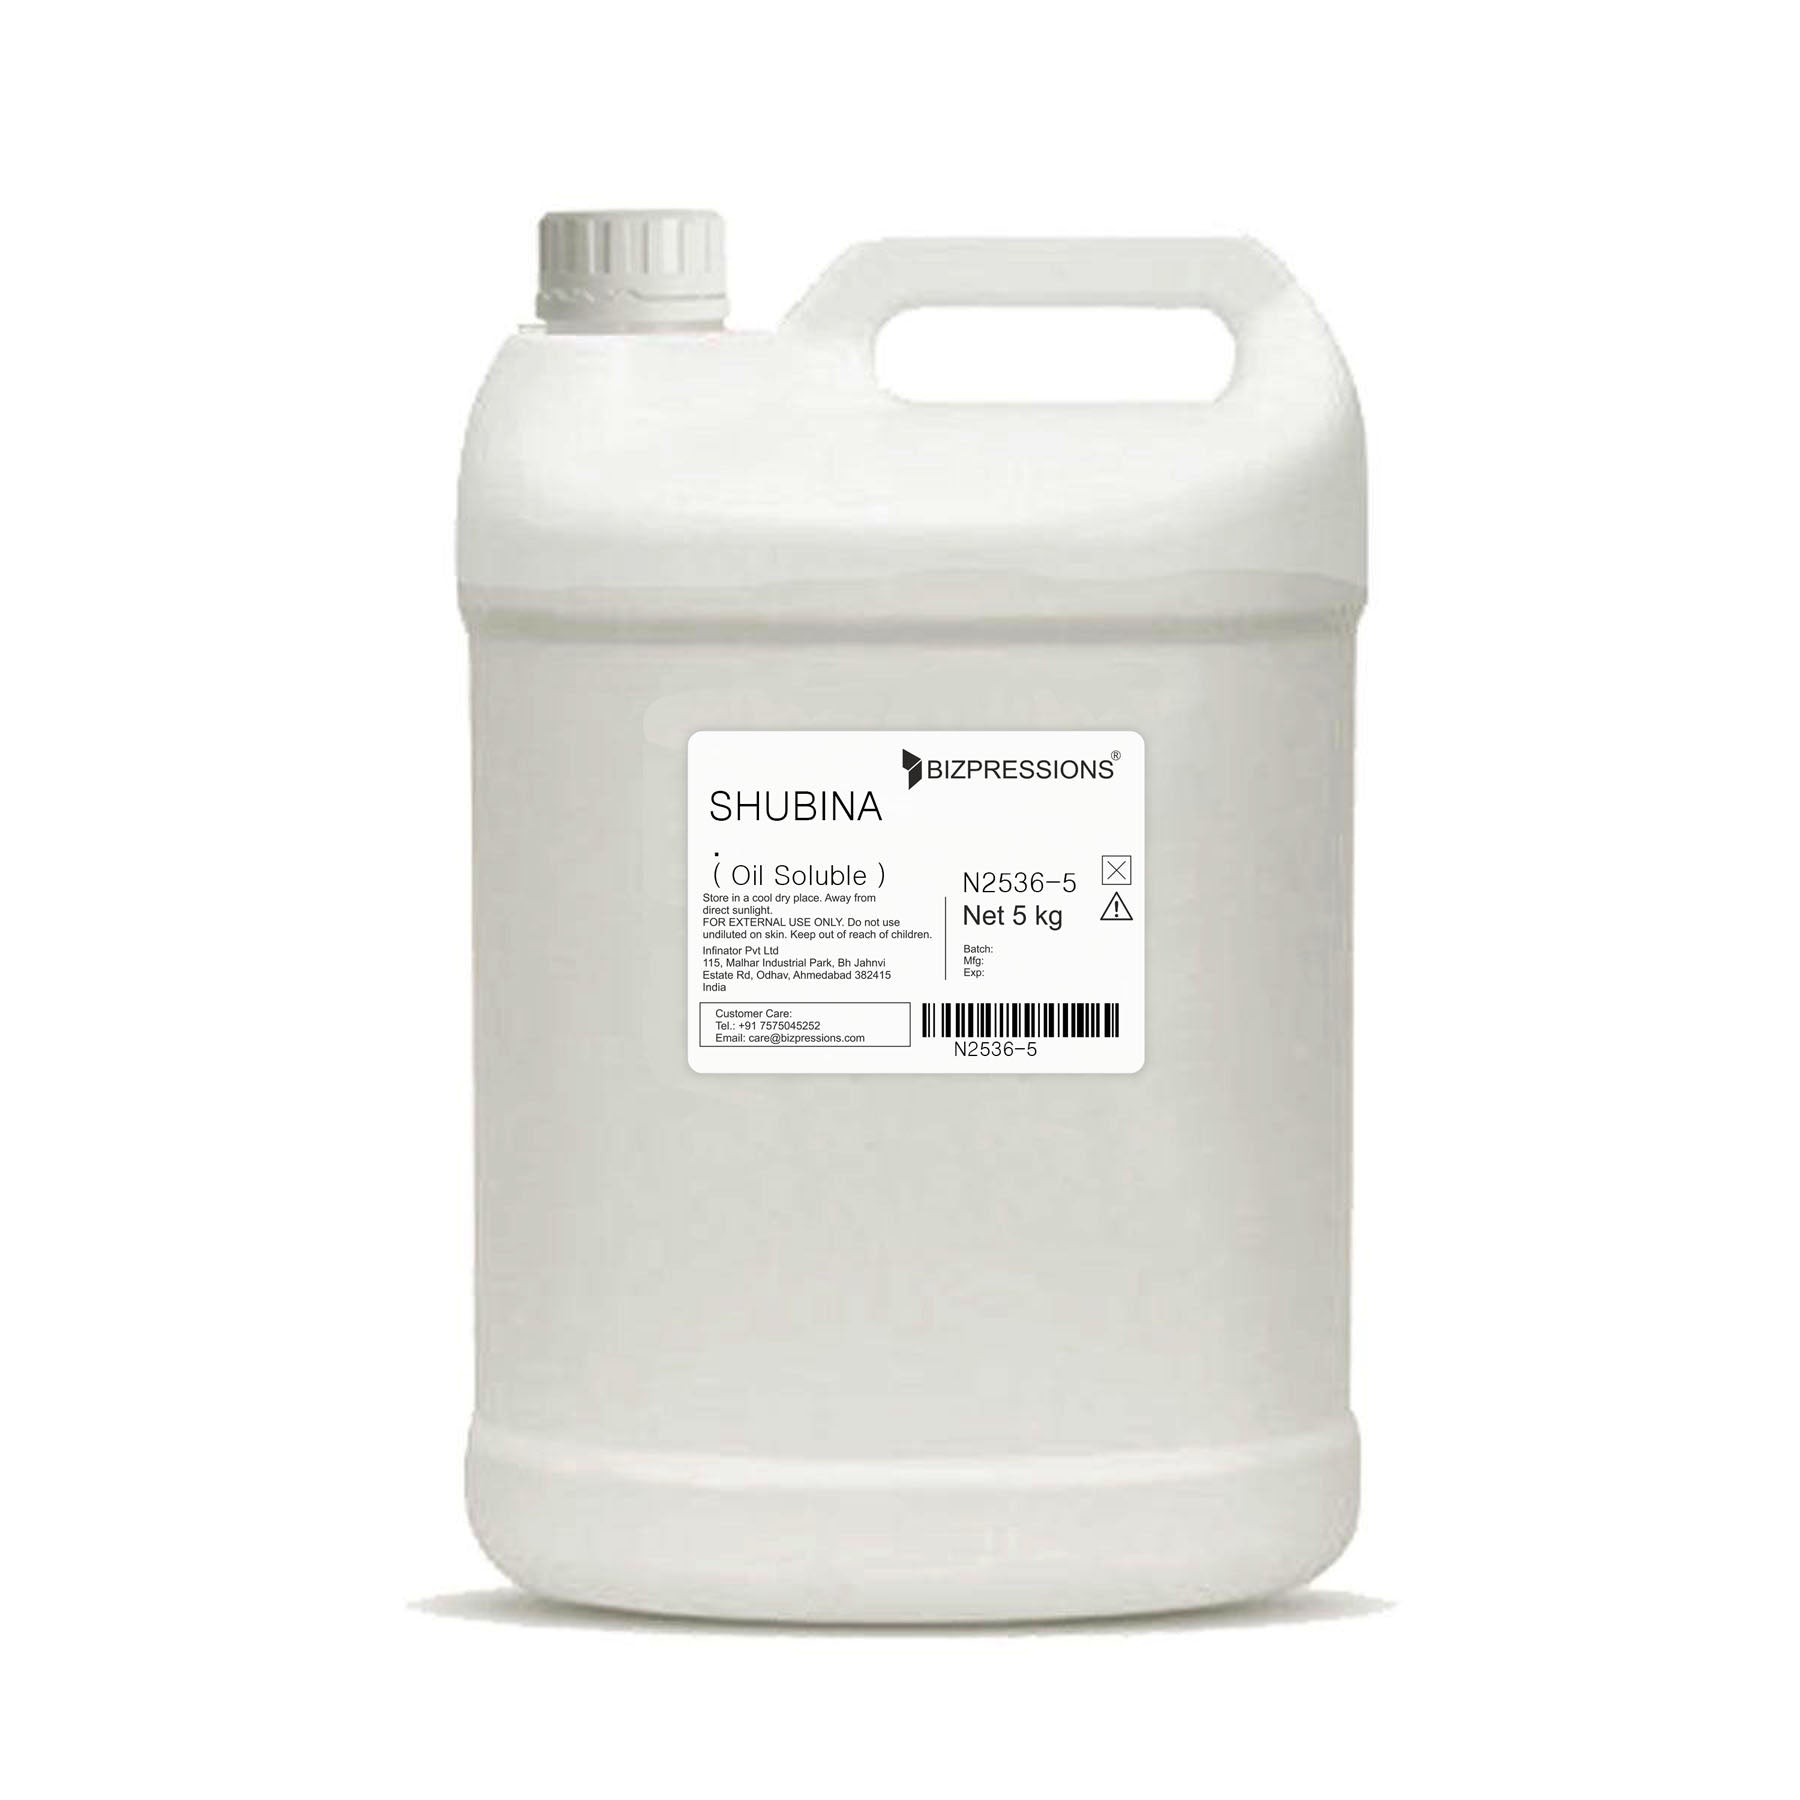 SHUBINA - Fragrance ( Oil Soluble ) - 5 kg